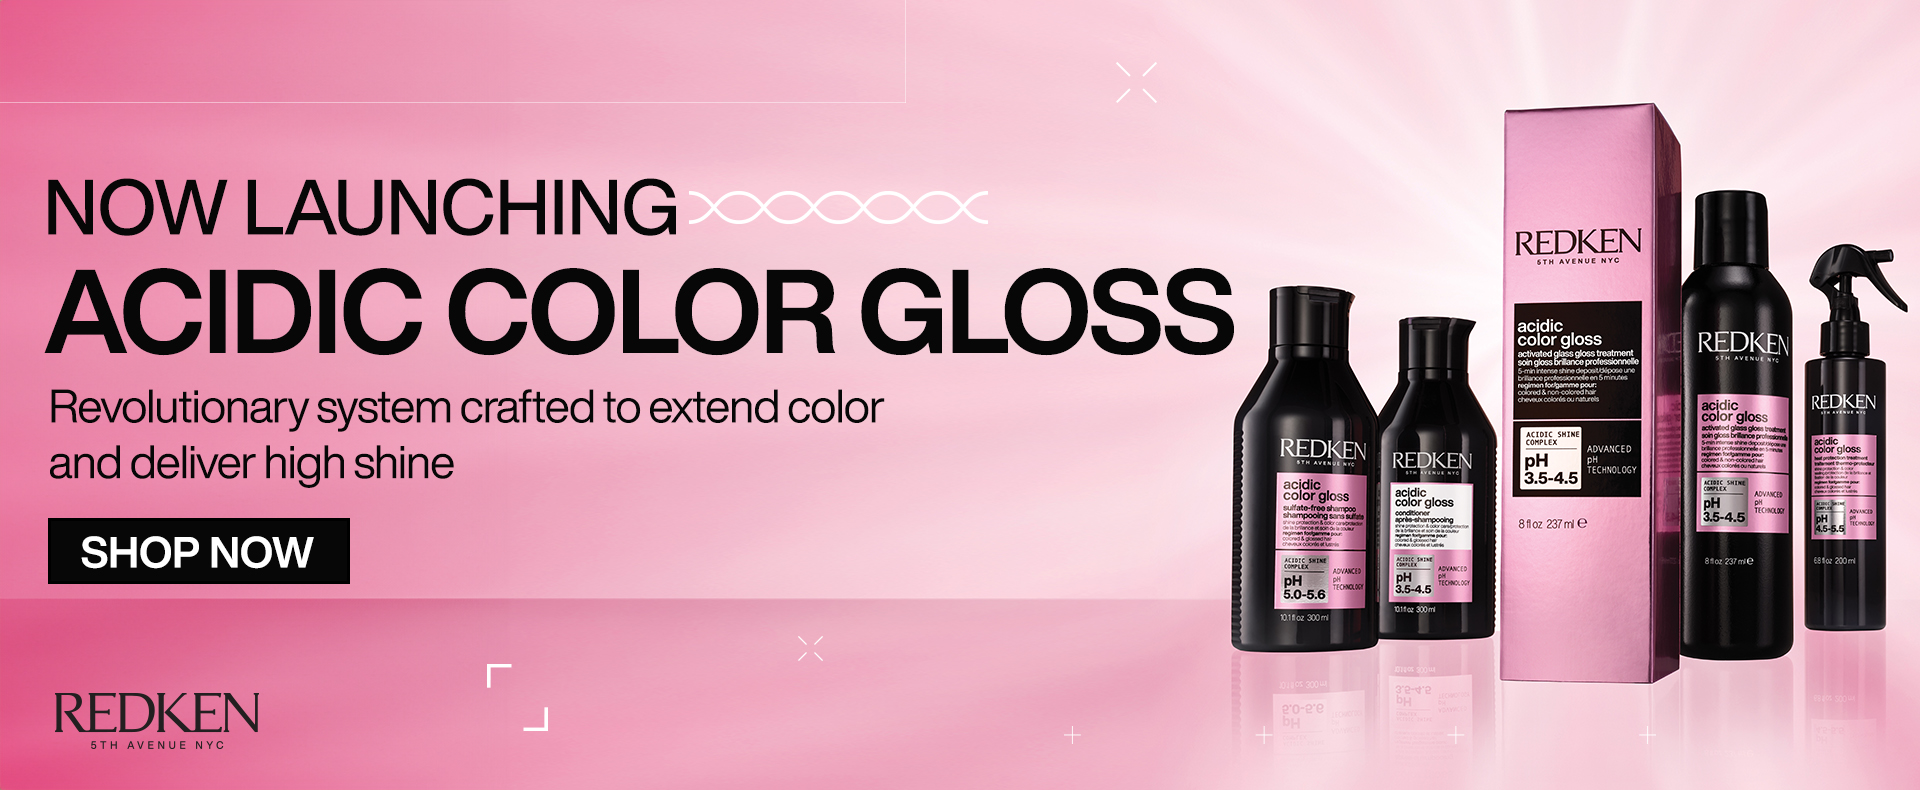 NEW! Acidic Color Gloss!